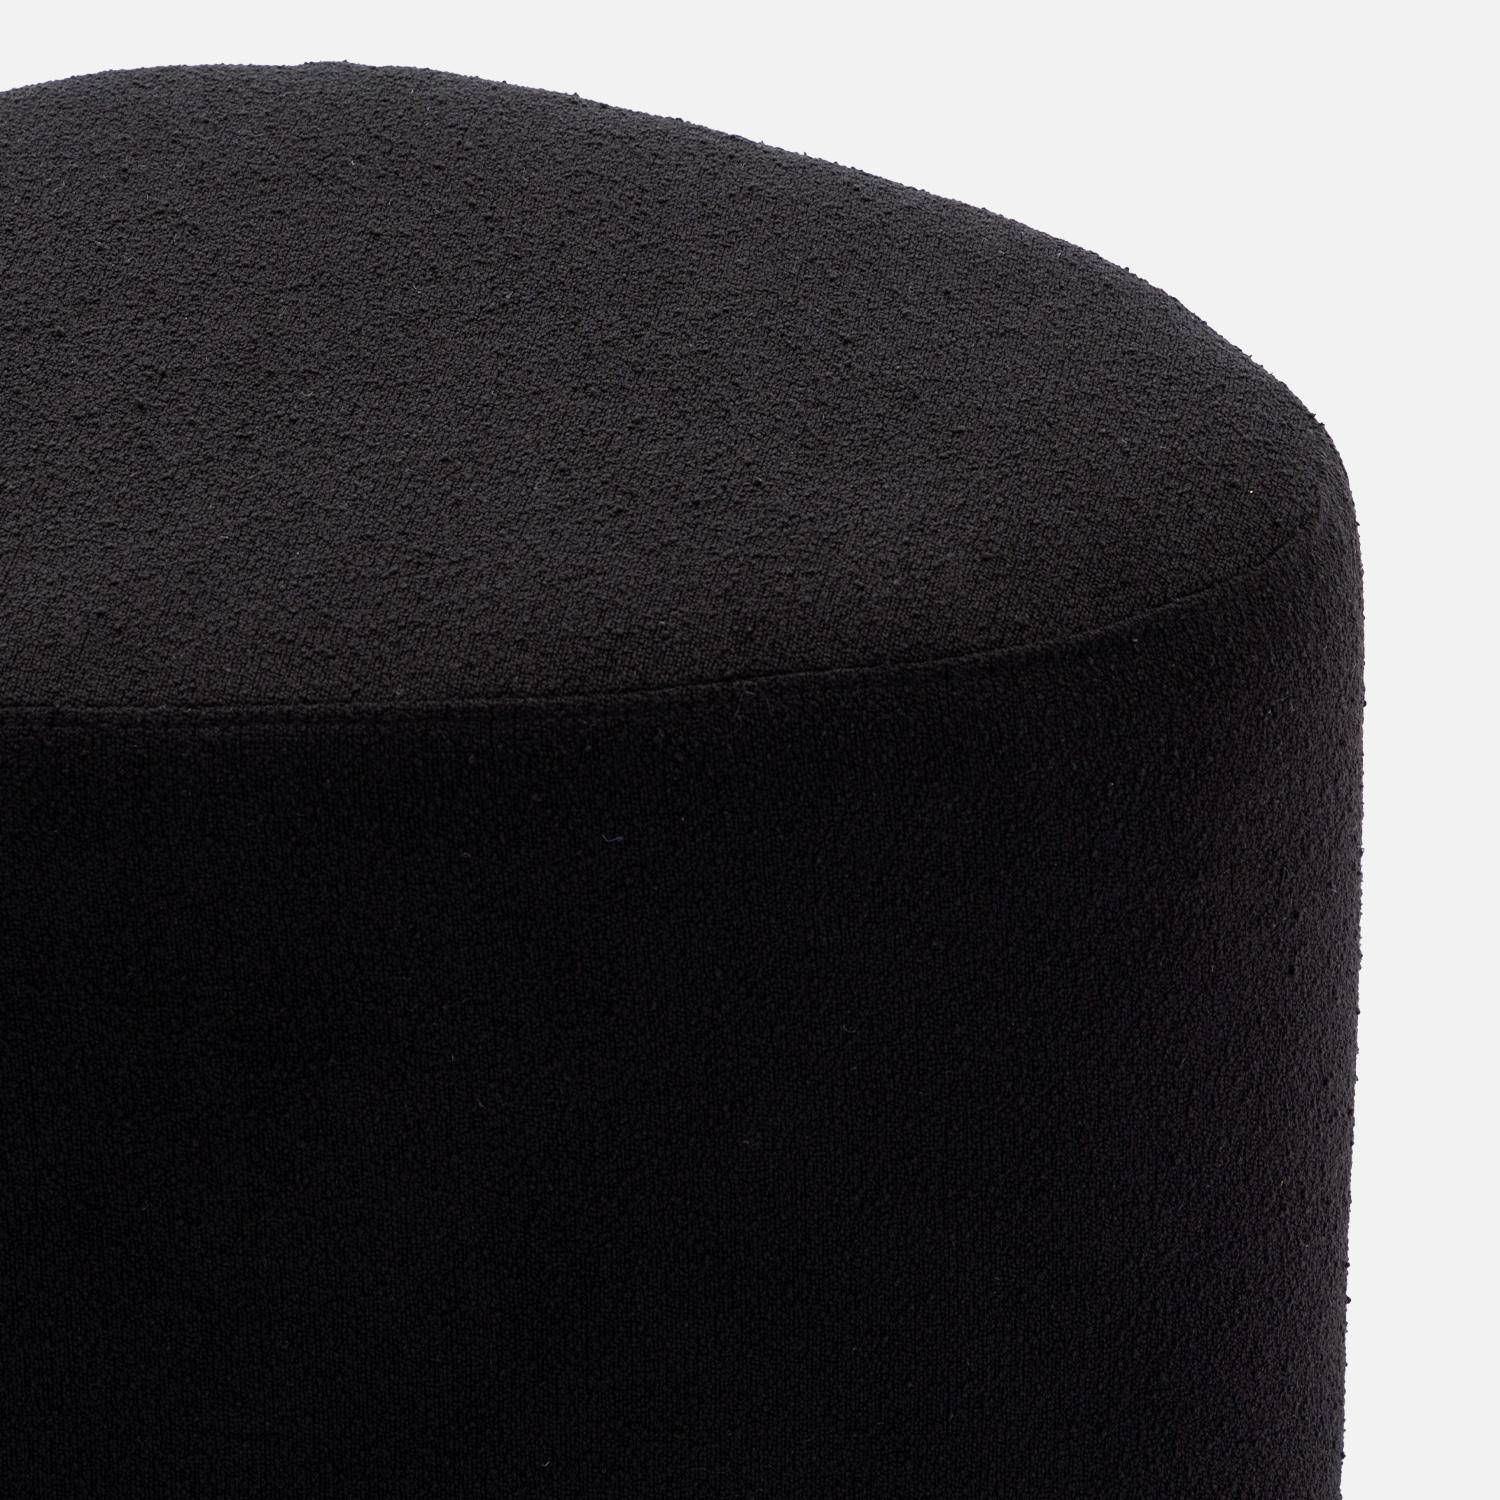 taburete, puf en forma de guijarro en tejido negro, TAO A 60 x P 44 x H 40cm Photo5